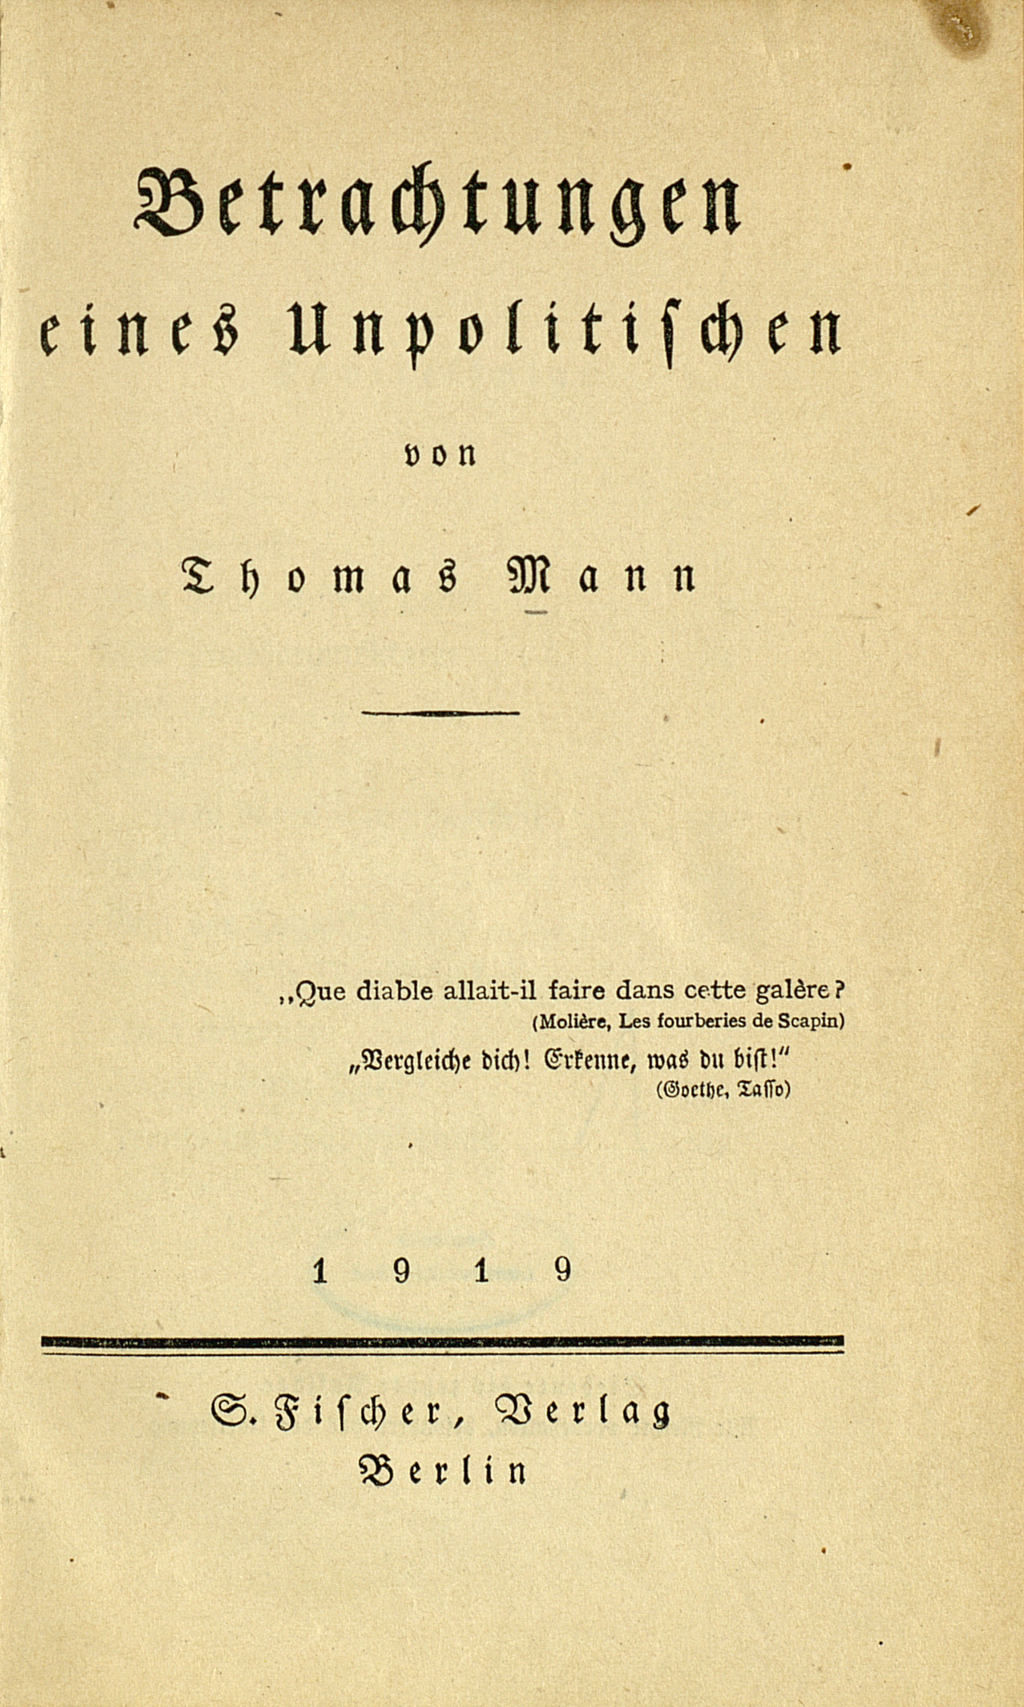 Zu sehen ist das Titelblatt der Erstausgabe von Thomas Manns "Betrachtungen eines Unpolitischen" aus de, Jahr 1918.